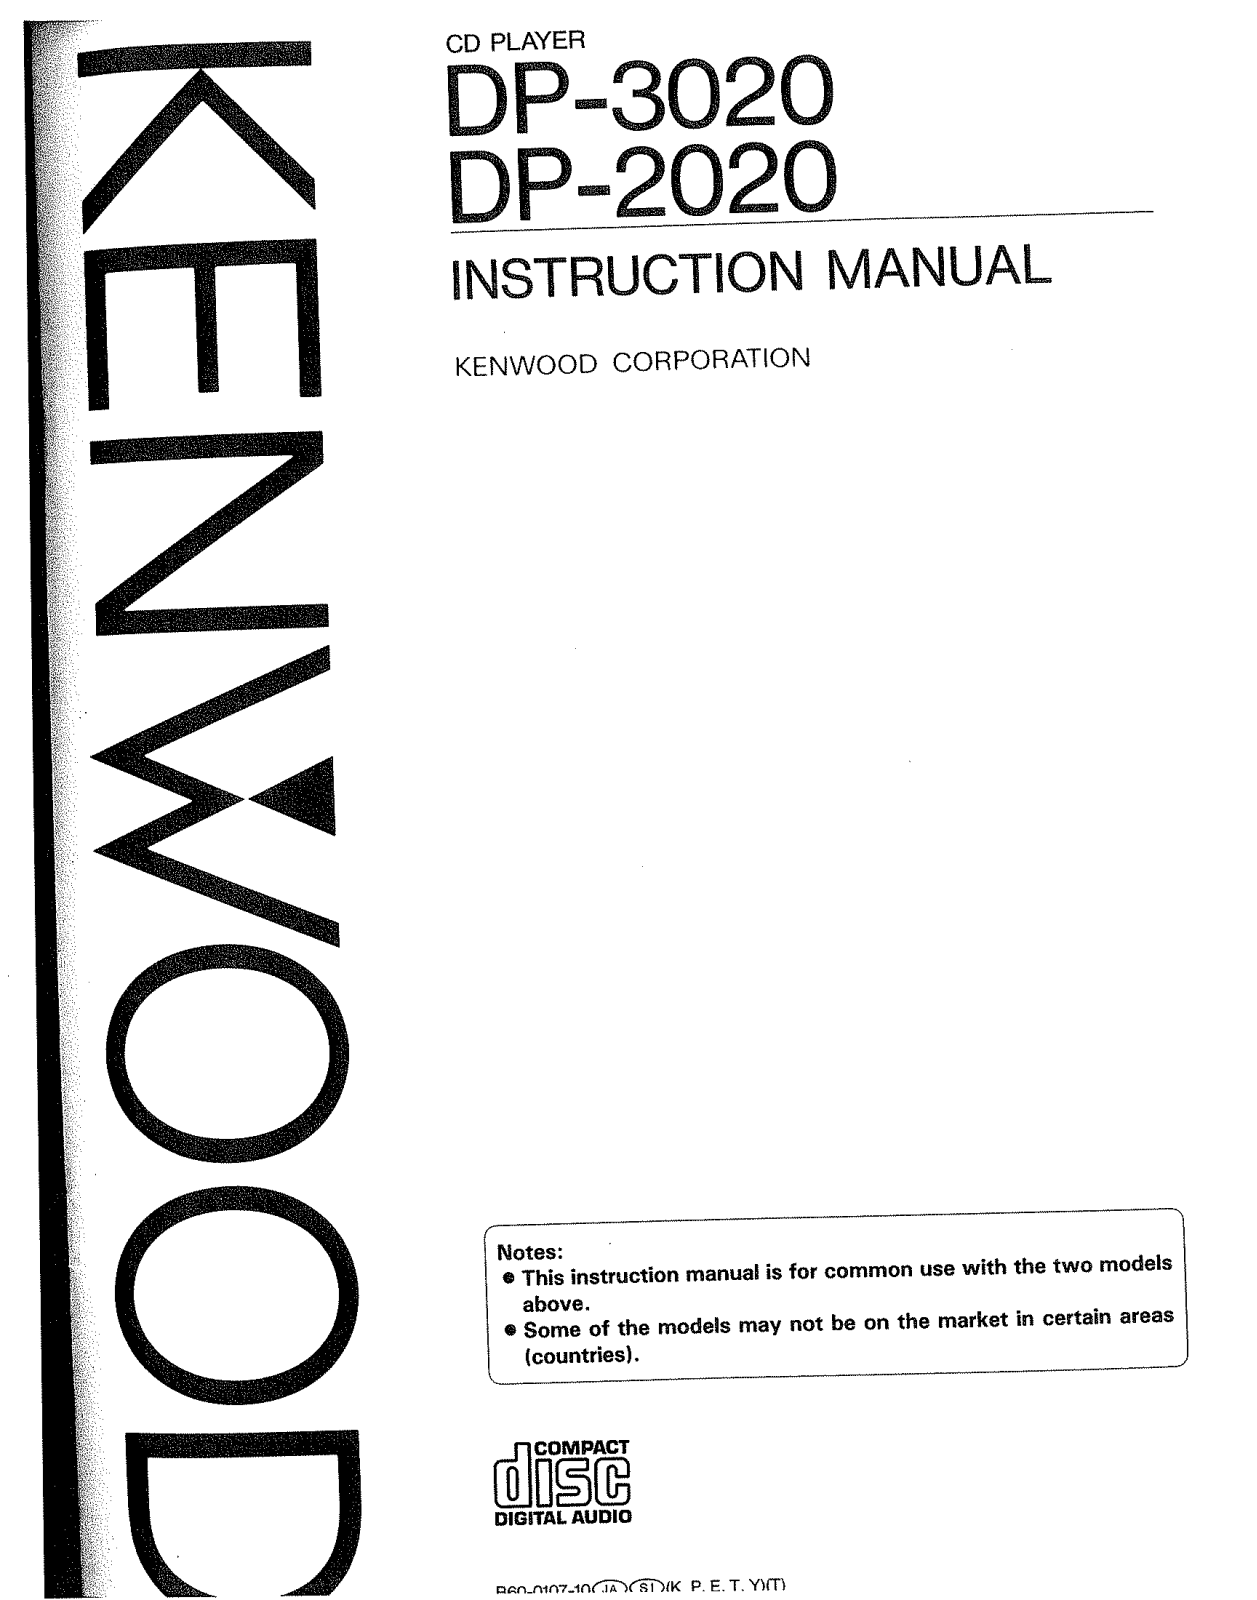 Kenwood DP-2020, DP-3020 Owner's Manual